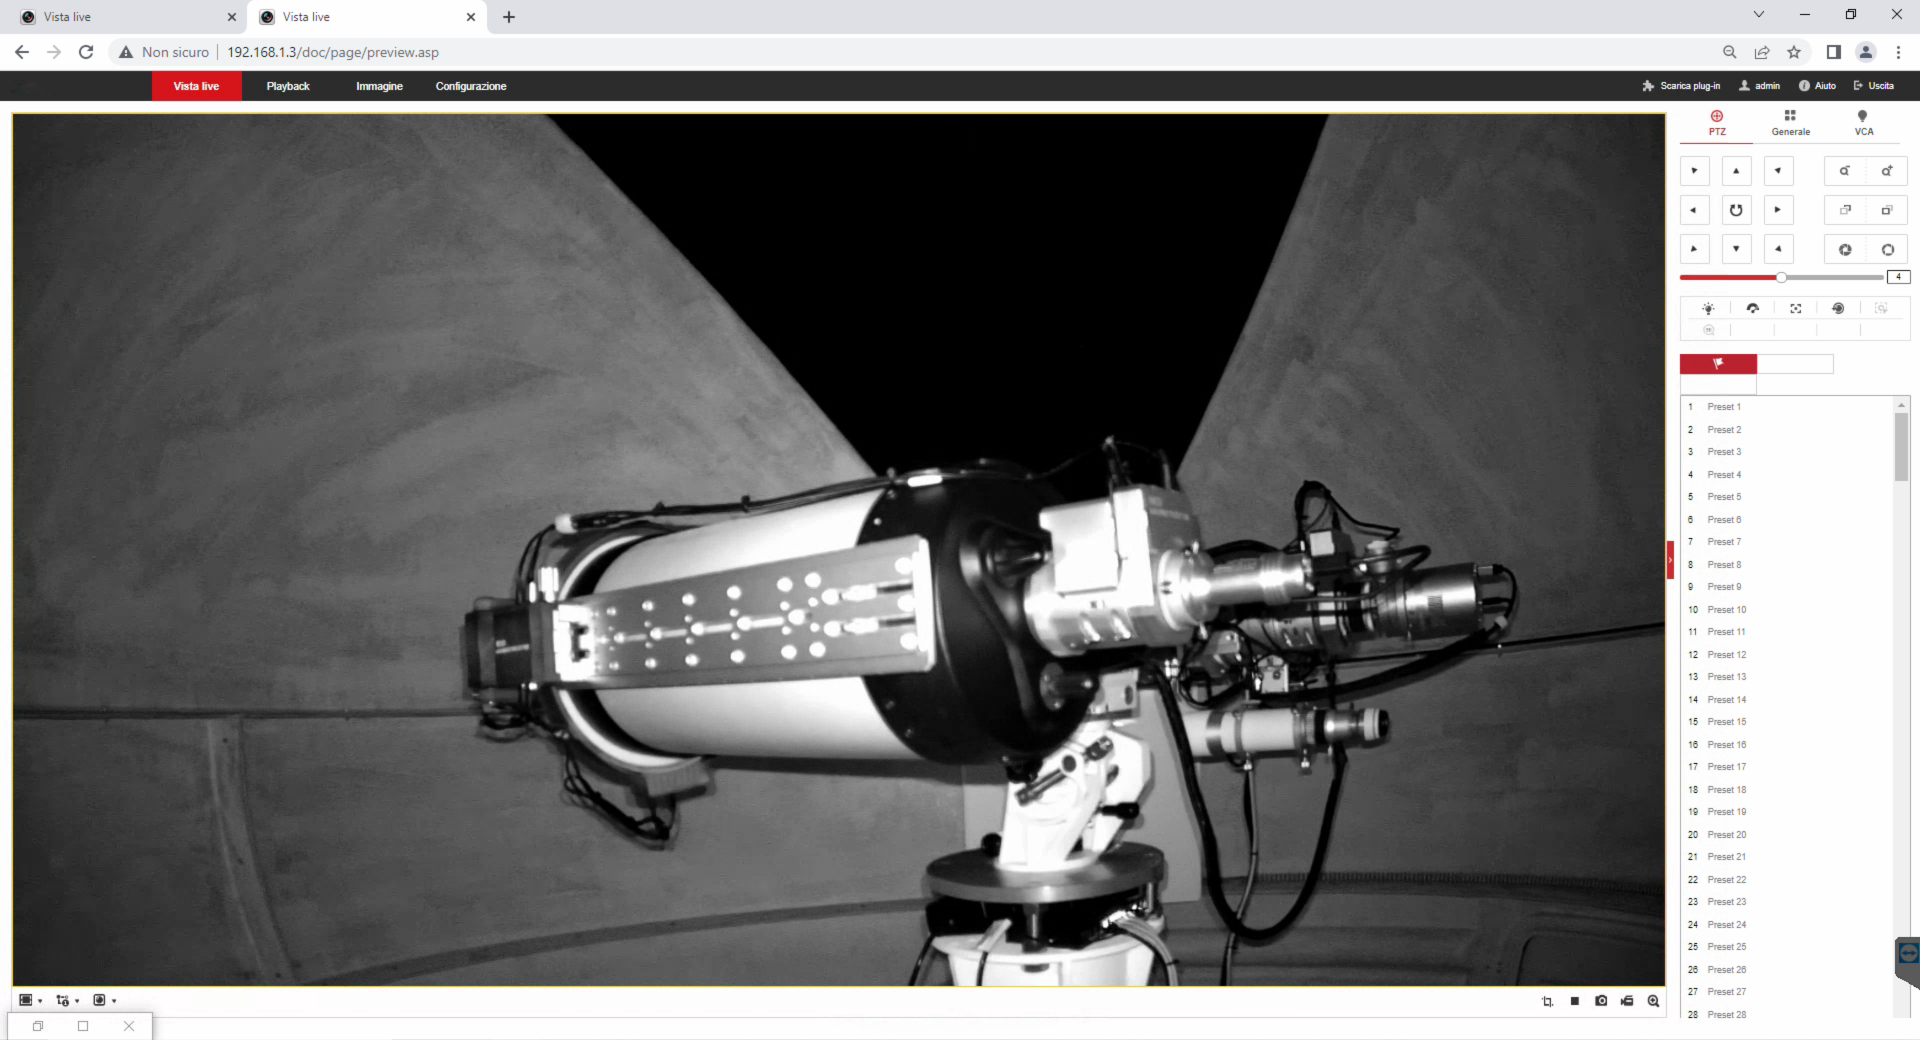 Come alimentare e controllare in remoto il telescopio nell'osservatorio con EAGLE